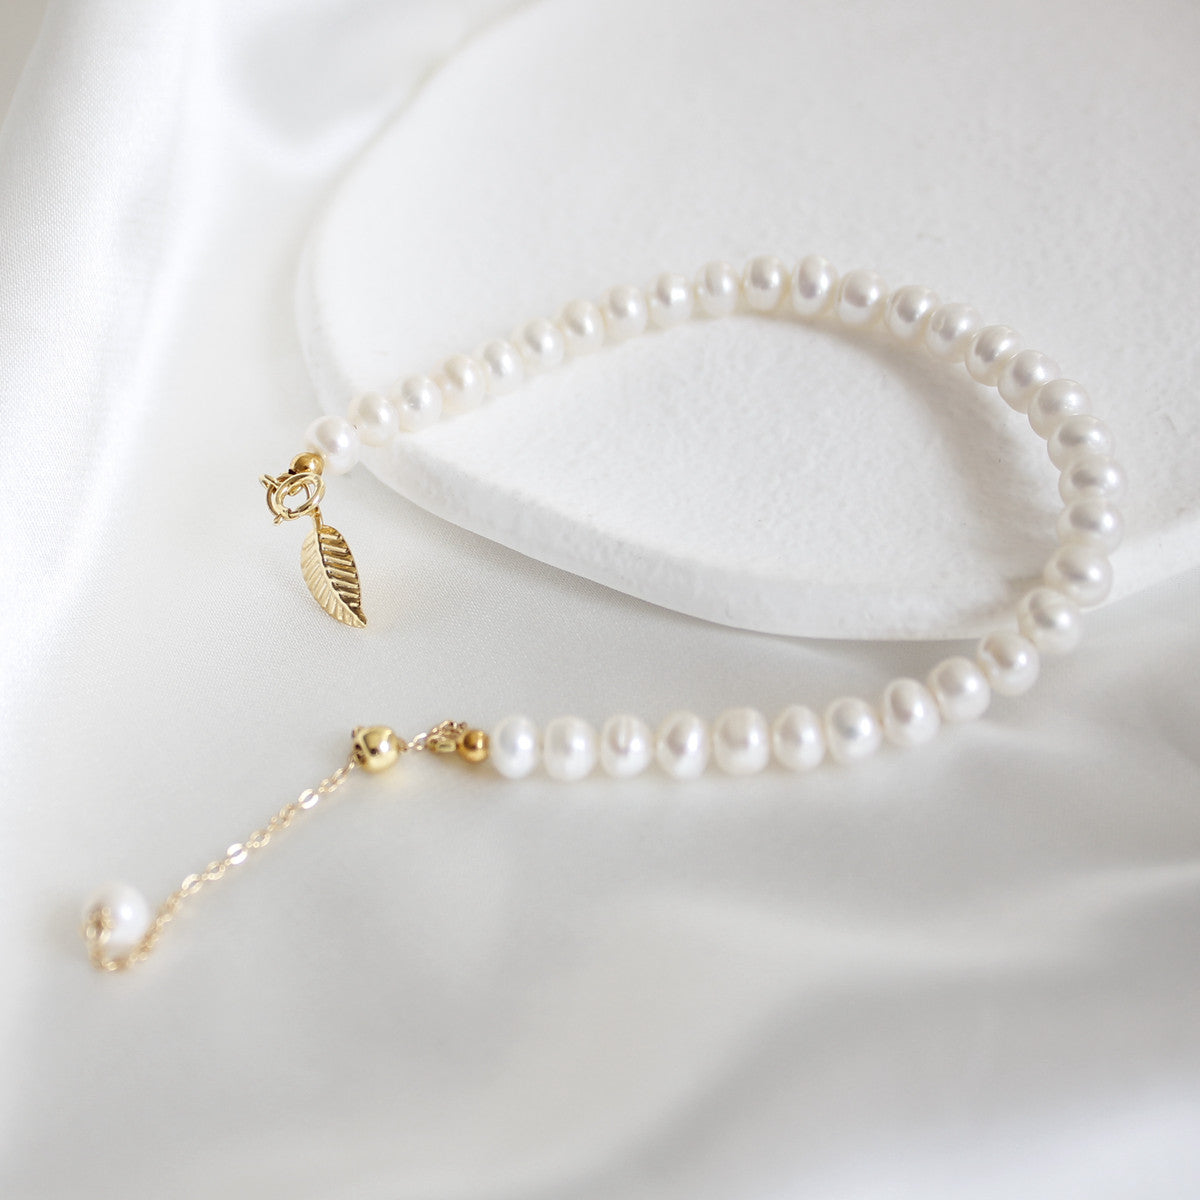 Natural Freshwater Pearl Bracelet | Niche Design, Golden Branches, 14K Gold